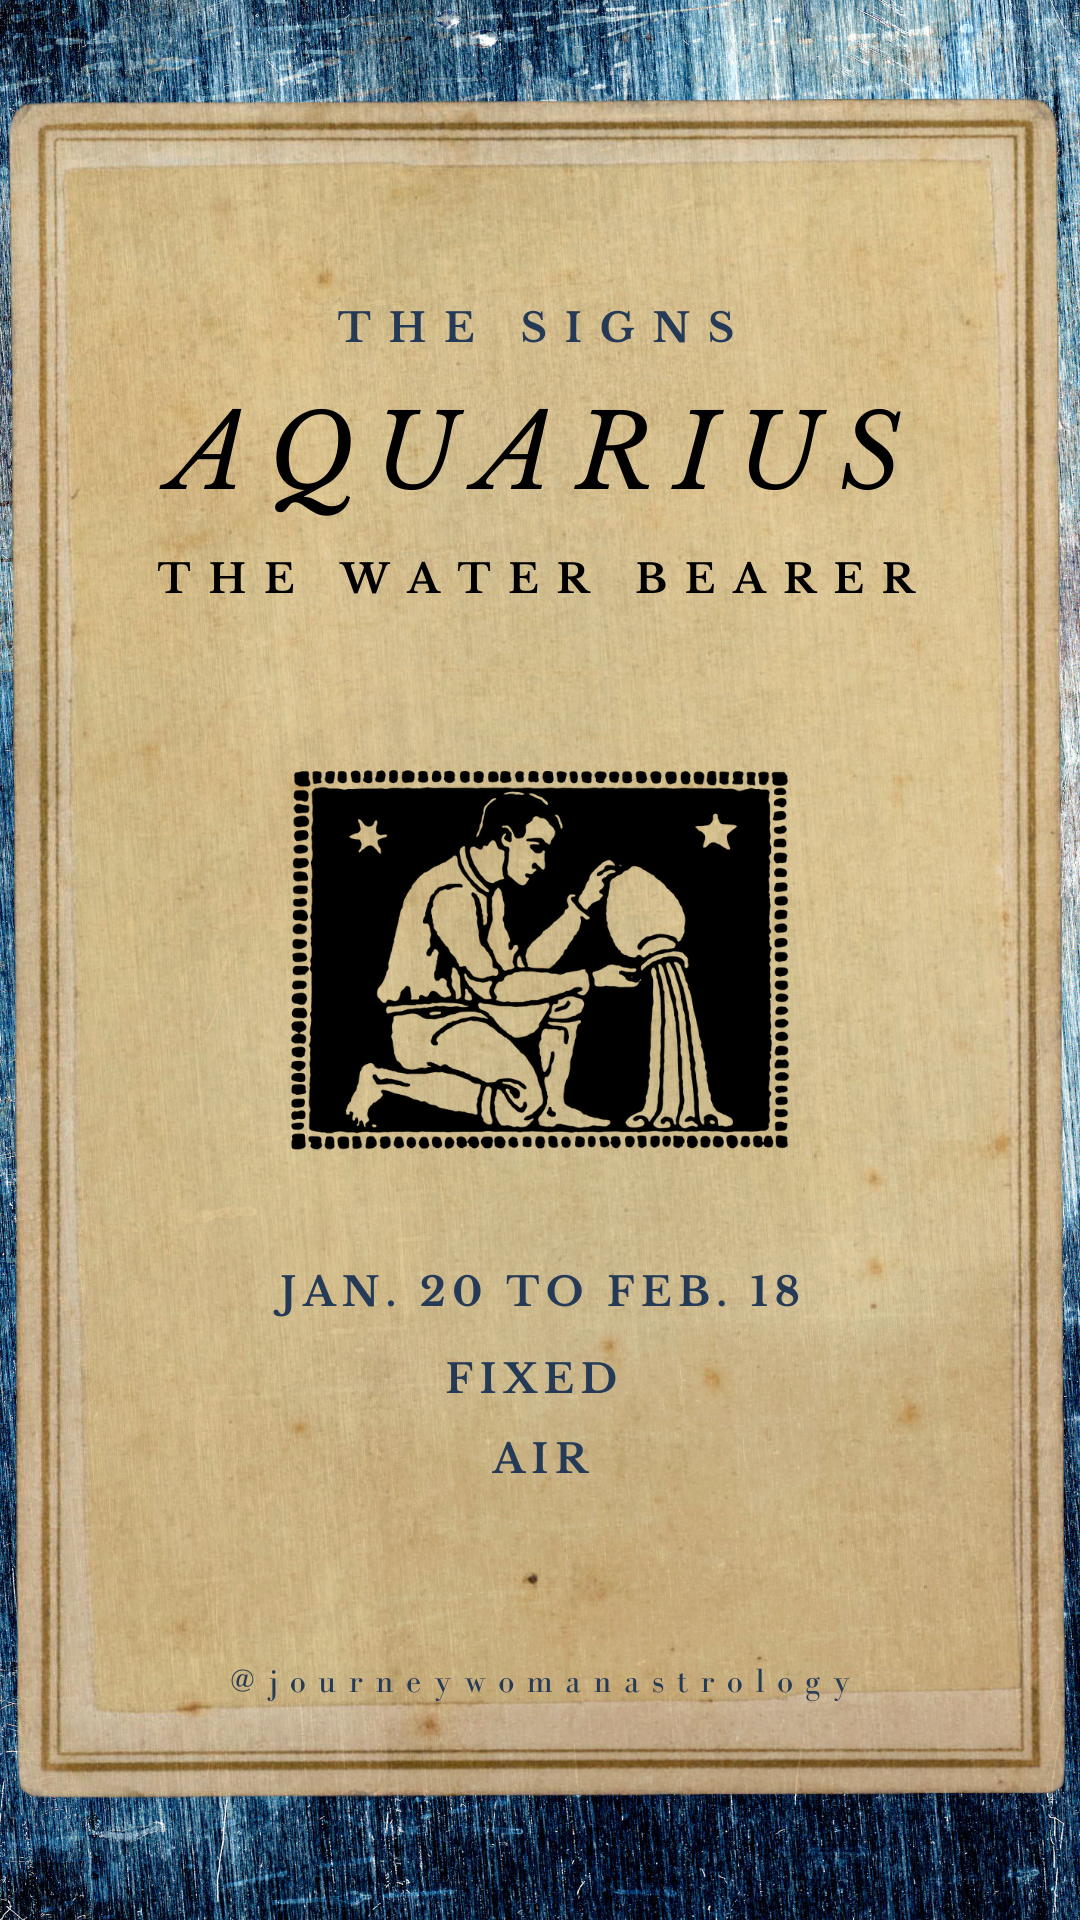 Aquarius dates, mode, element, symbol